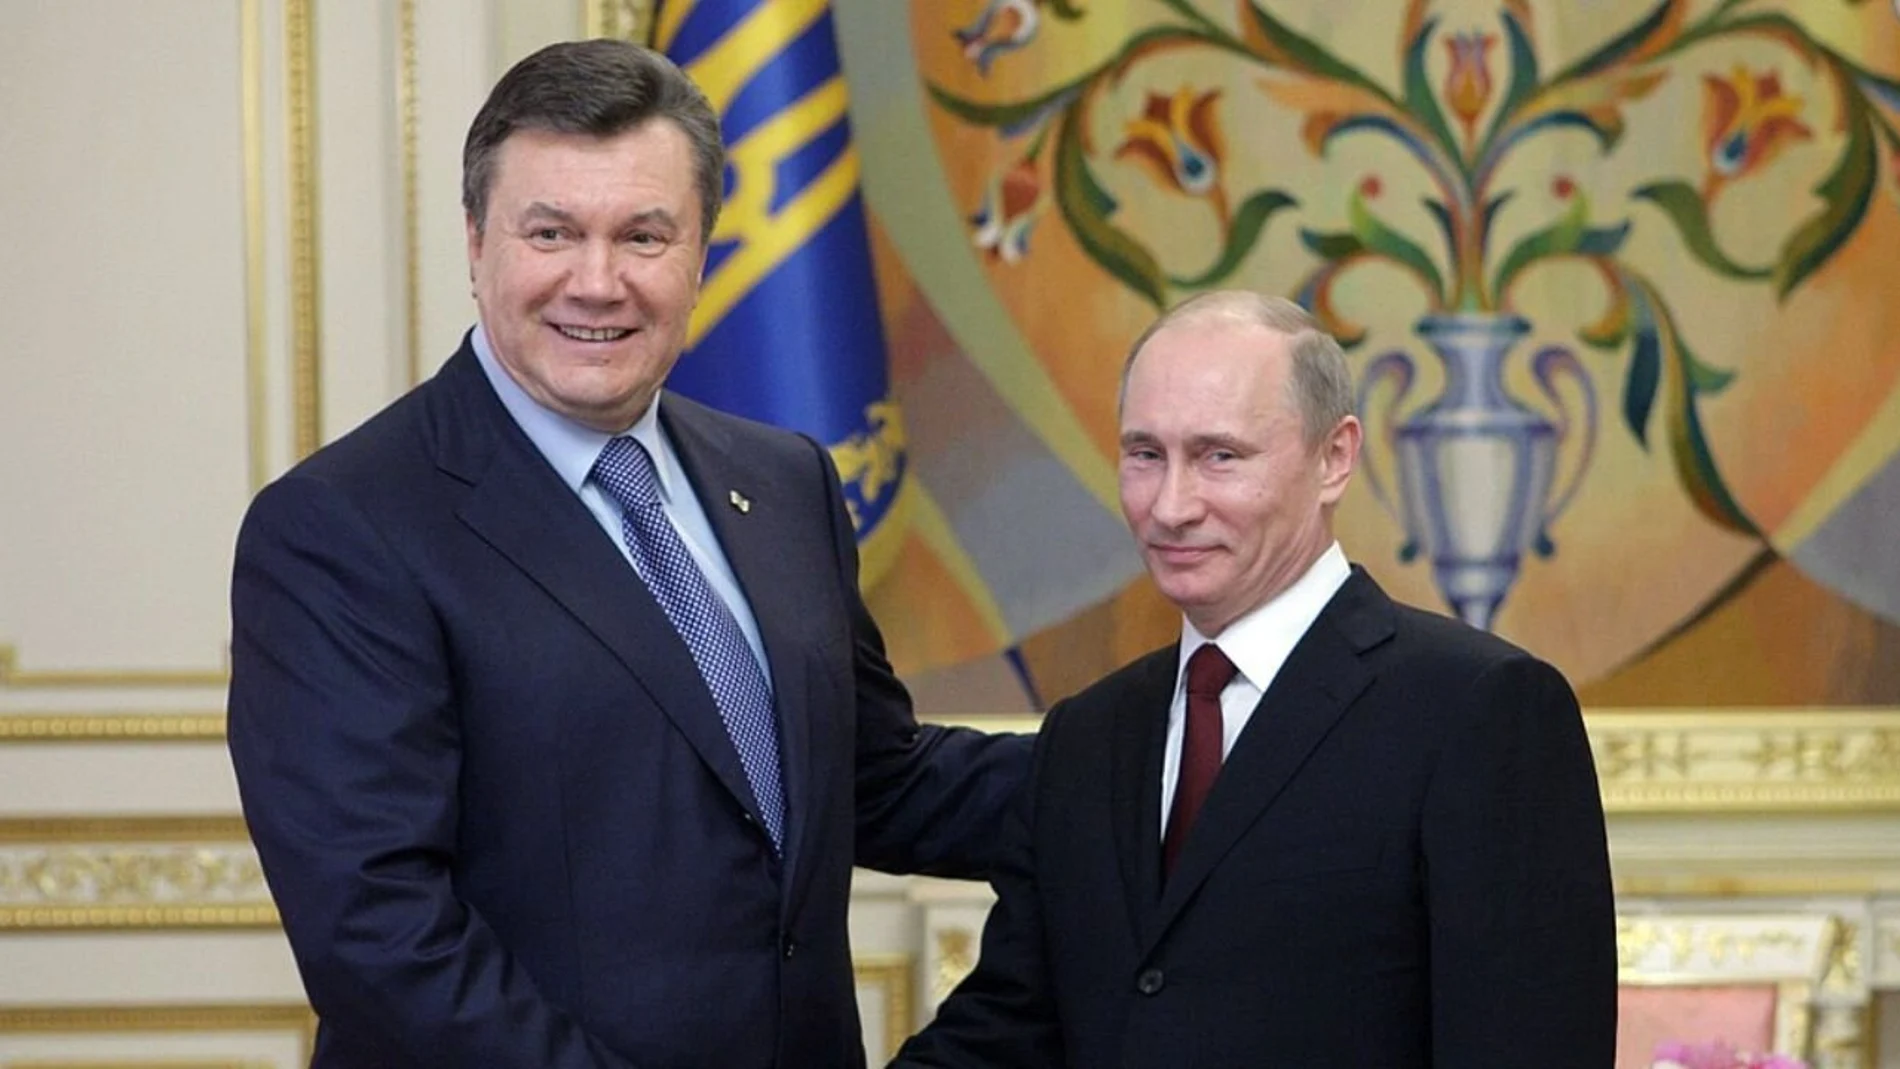 El entonces presidente de Ucrania, Víktor Yanukóvich, en una reunión con el mandatario de Rusia, Vladímir Putin, en el año 2011.